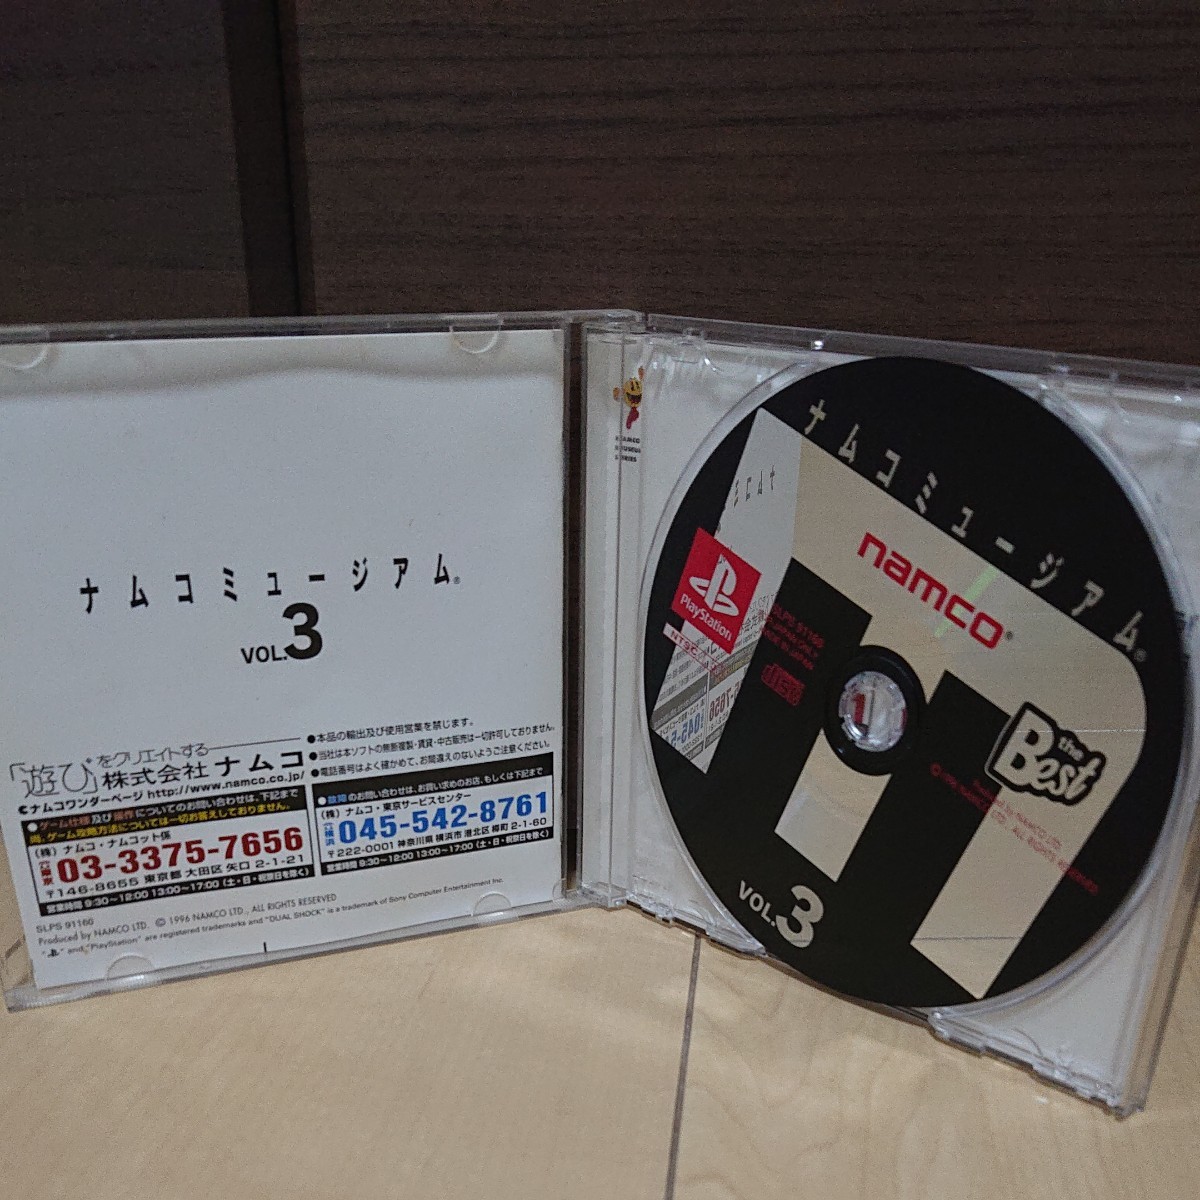 PS ナムコミュージアム Vol.3 PlayStation the Best